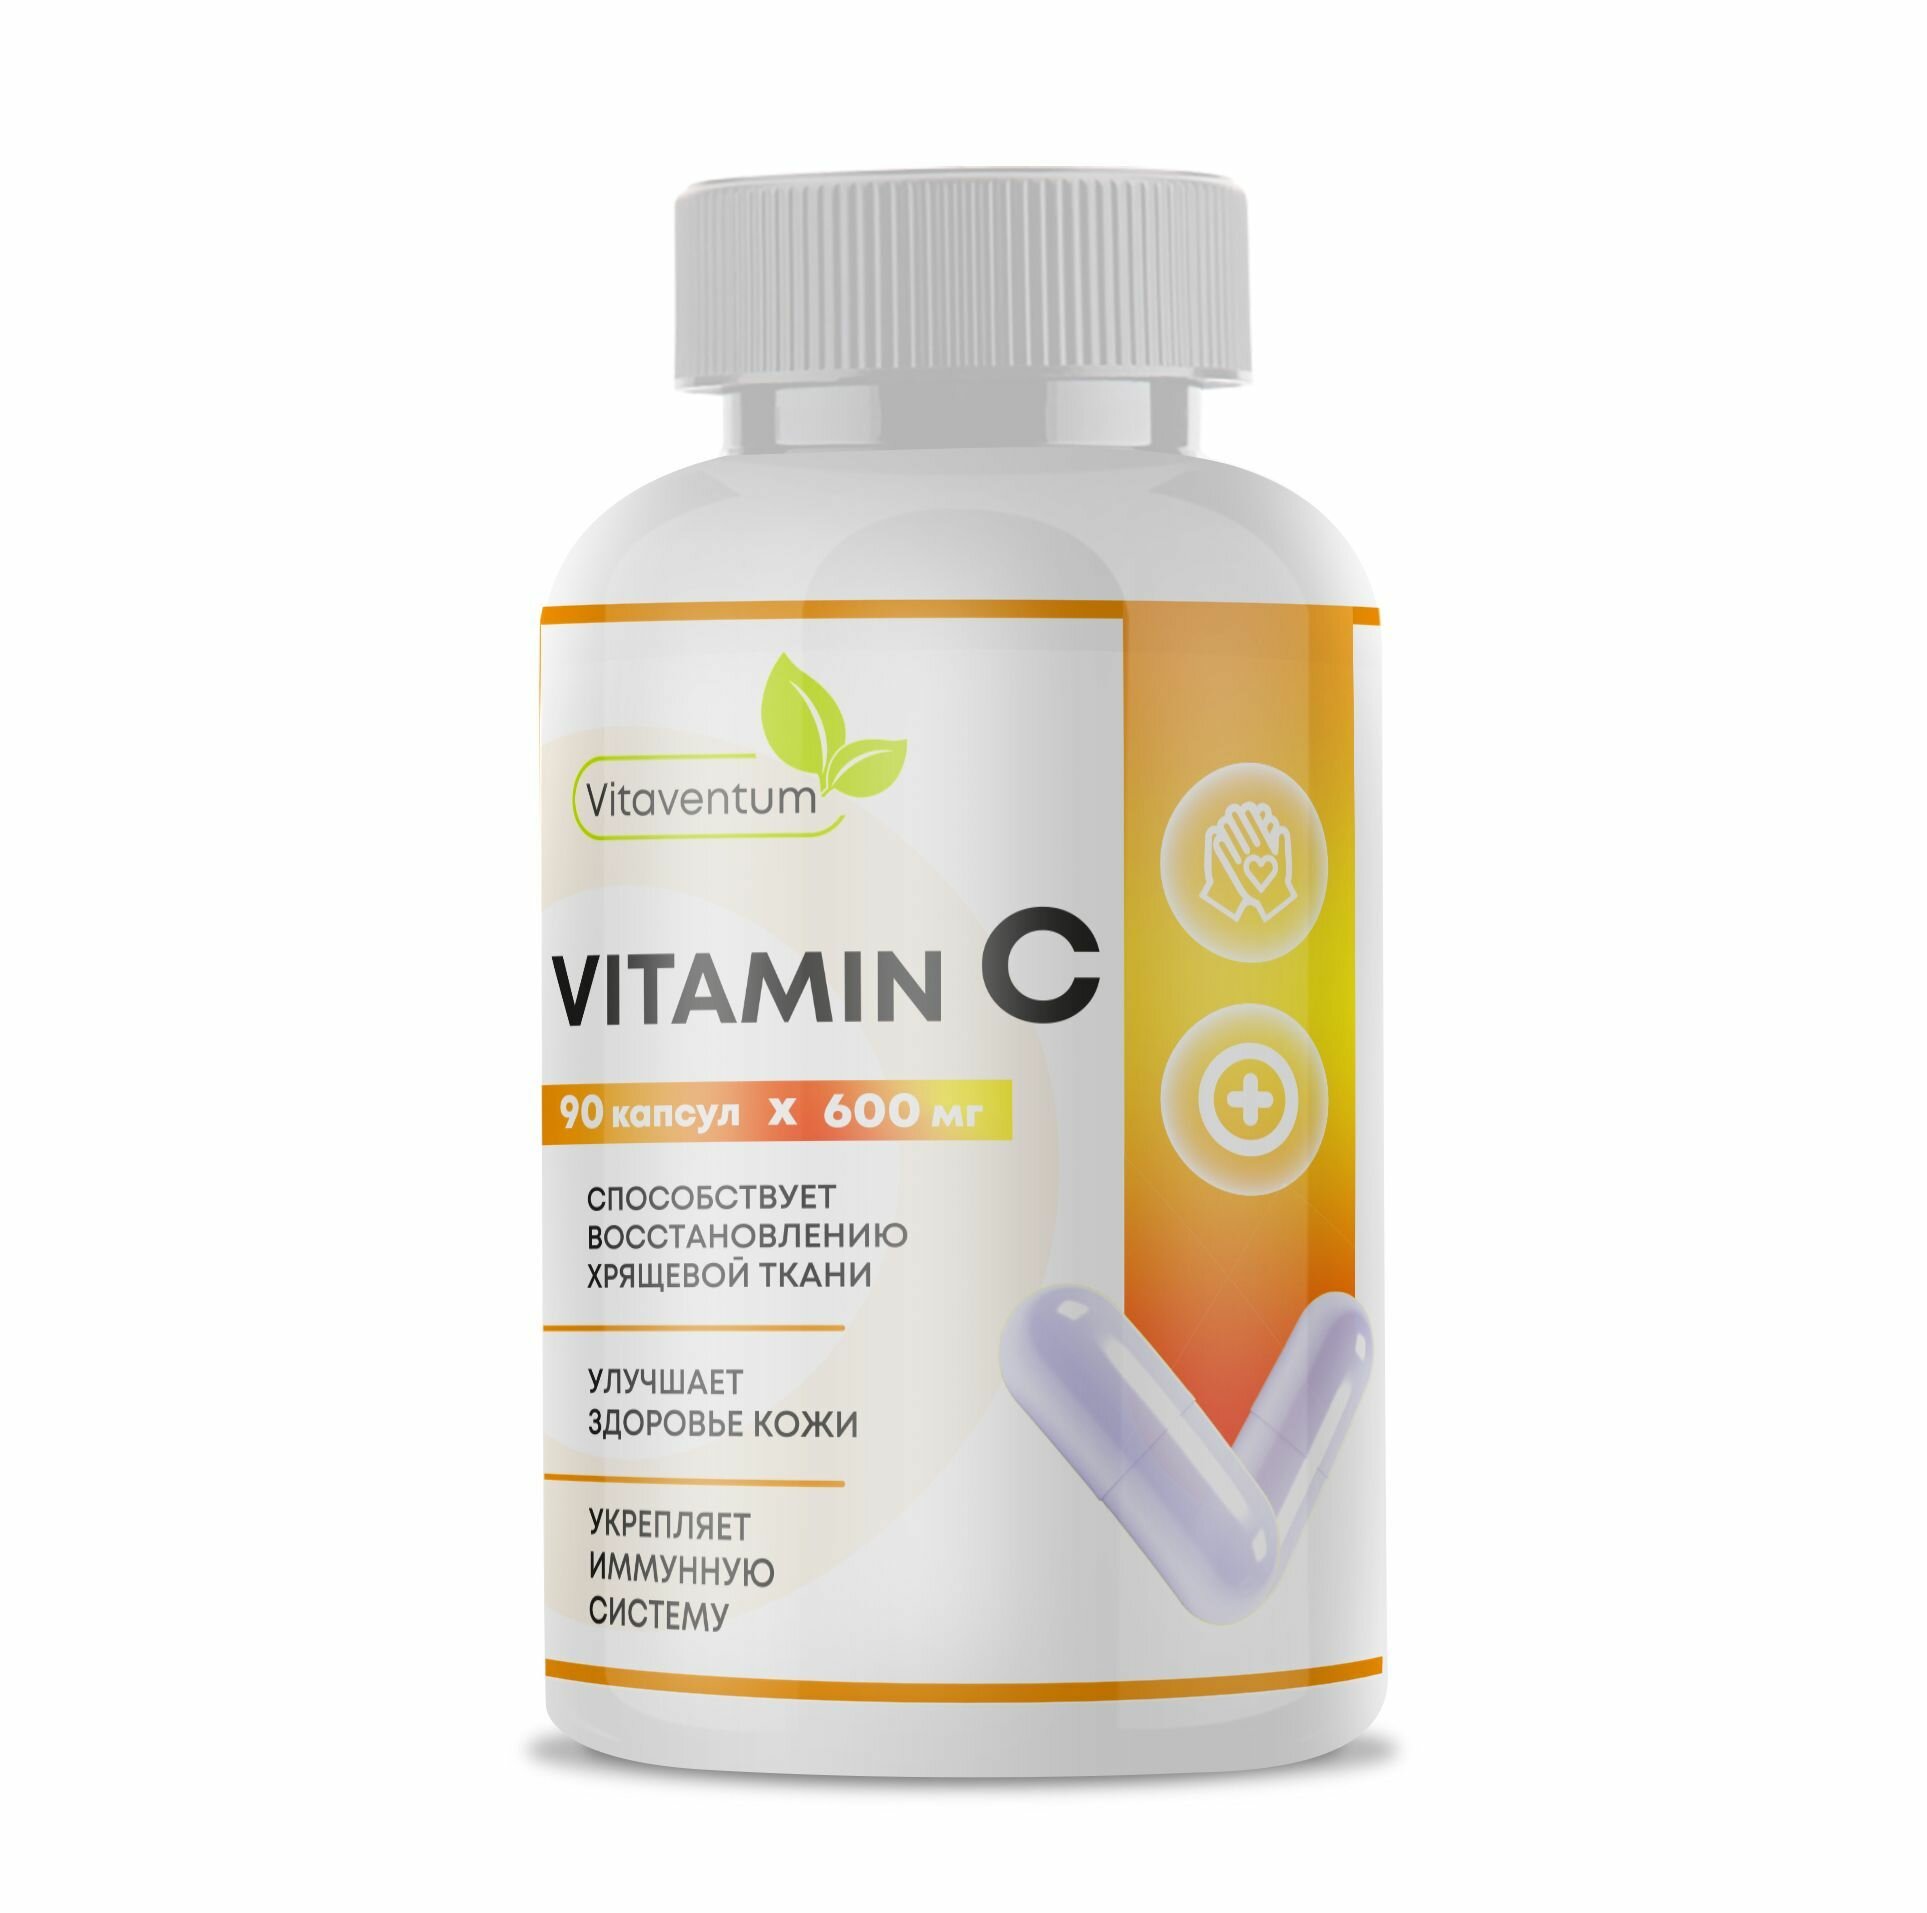 Витамин С (Vitamin C) Vitaventum, здоровый иммунитет, 90 капсул по 600 мг.